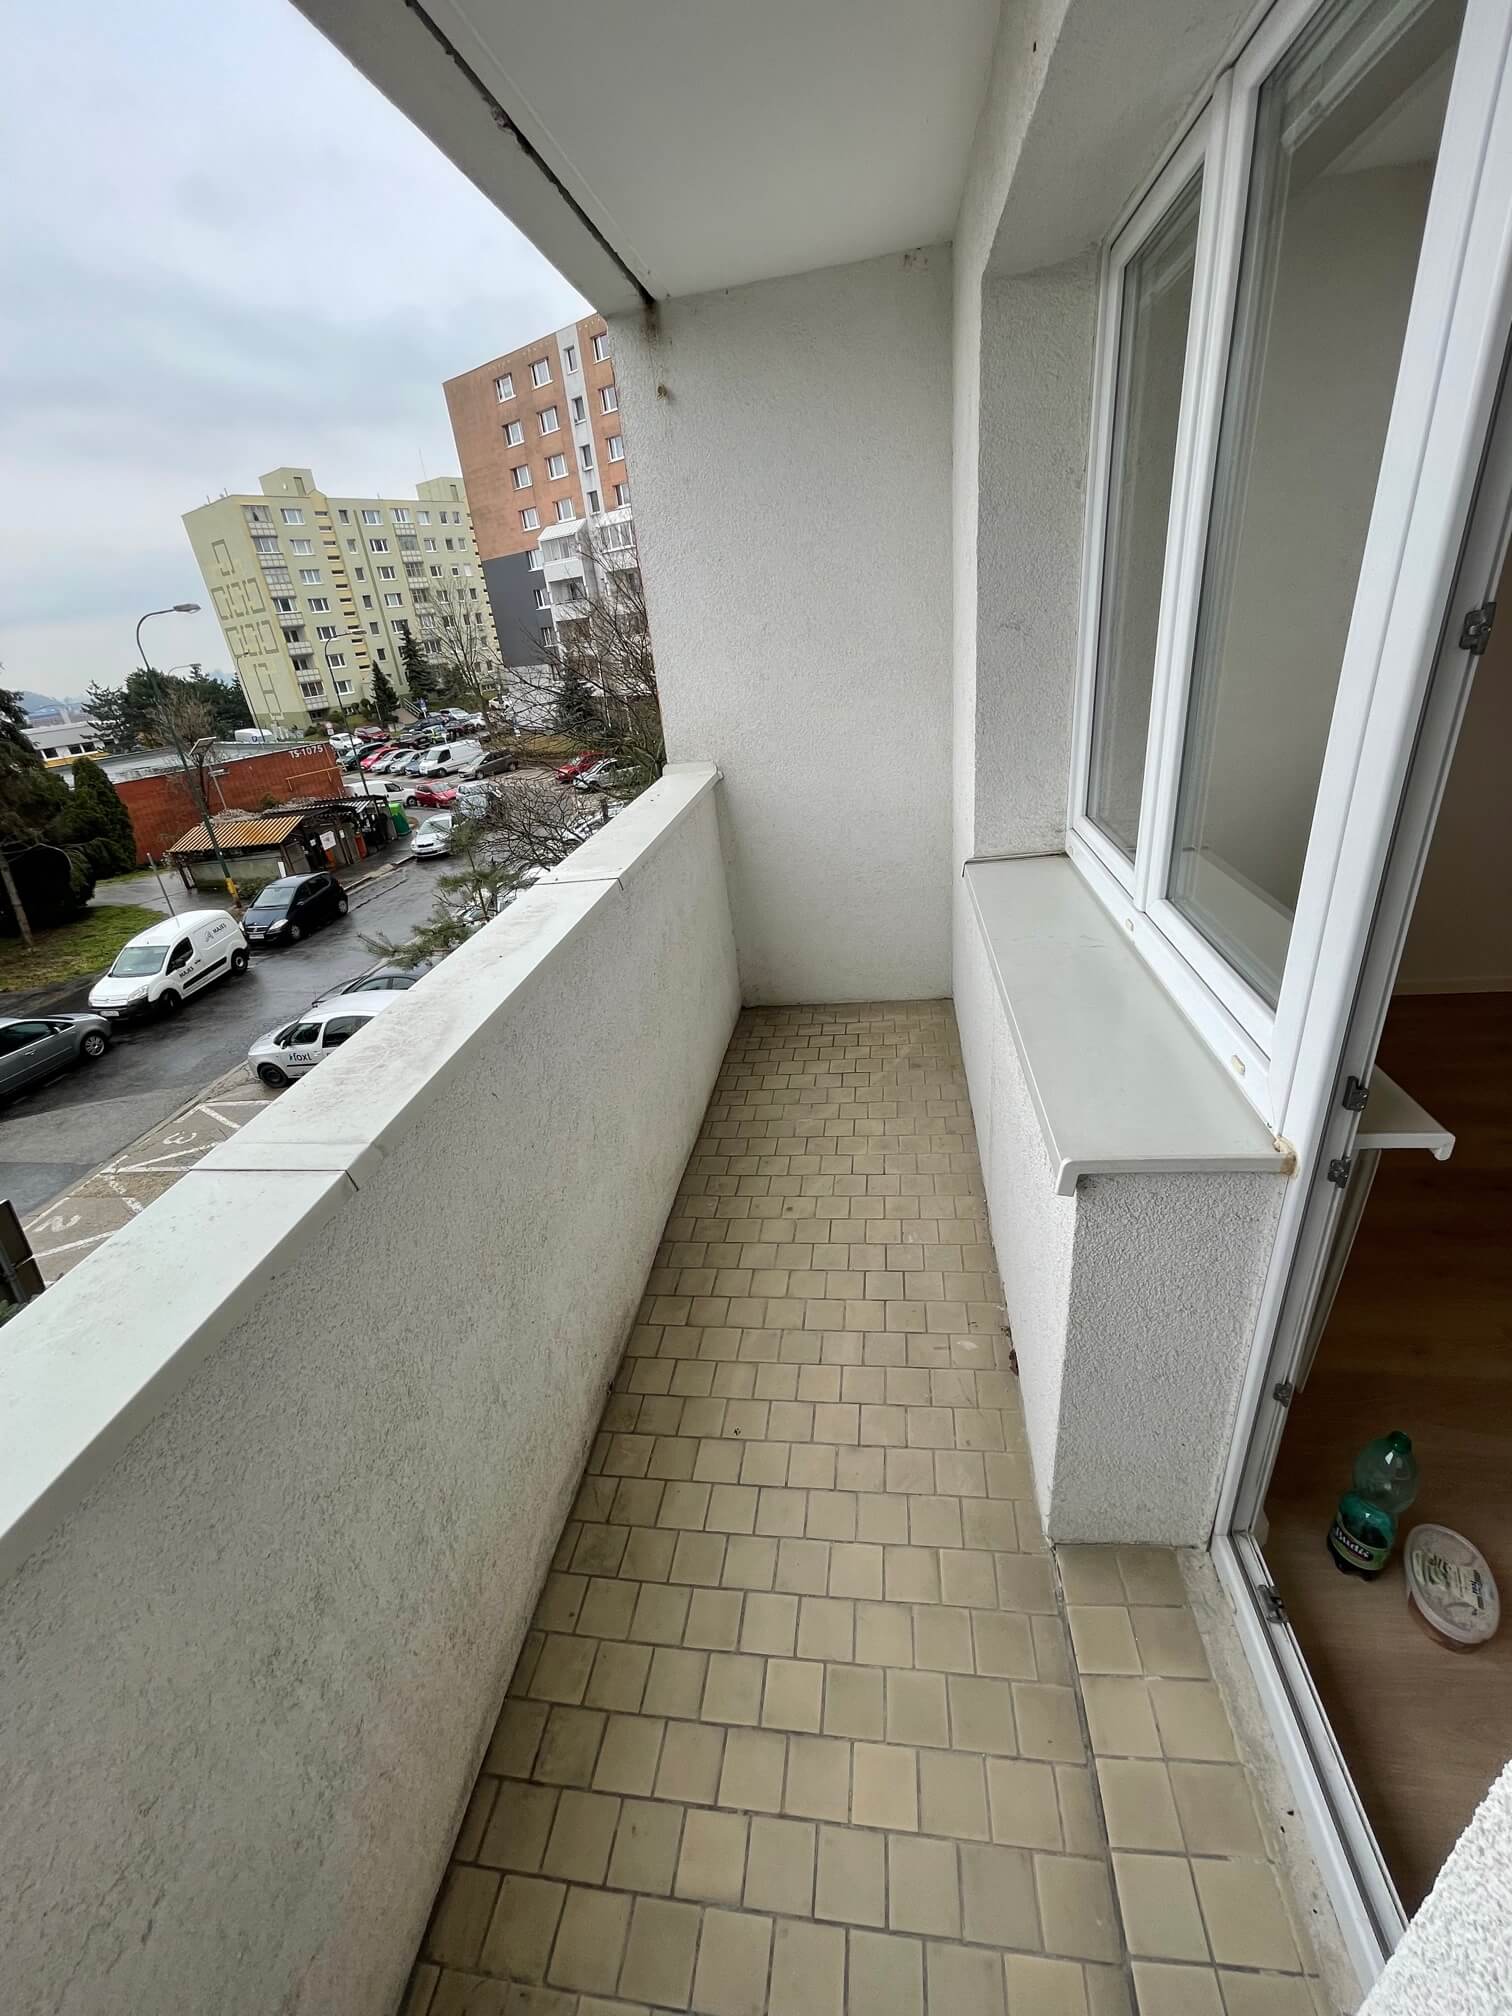 Prenajaté: Izby na prenájom v 3 izbovom byte, Karlovka, Kolísková 6 v Bratislave, 300€ izba, izba má 20m2 s  balkónom,-16